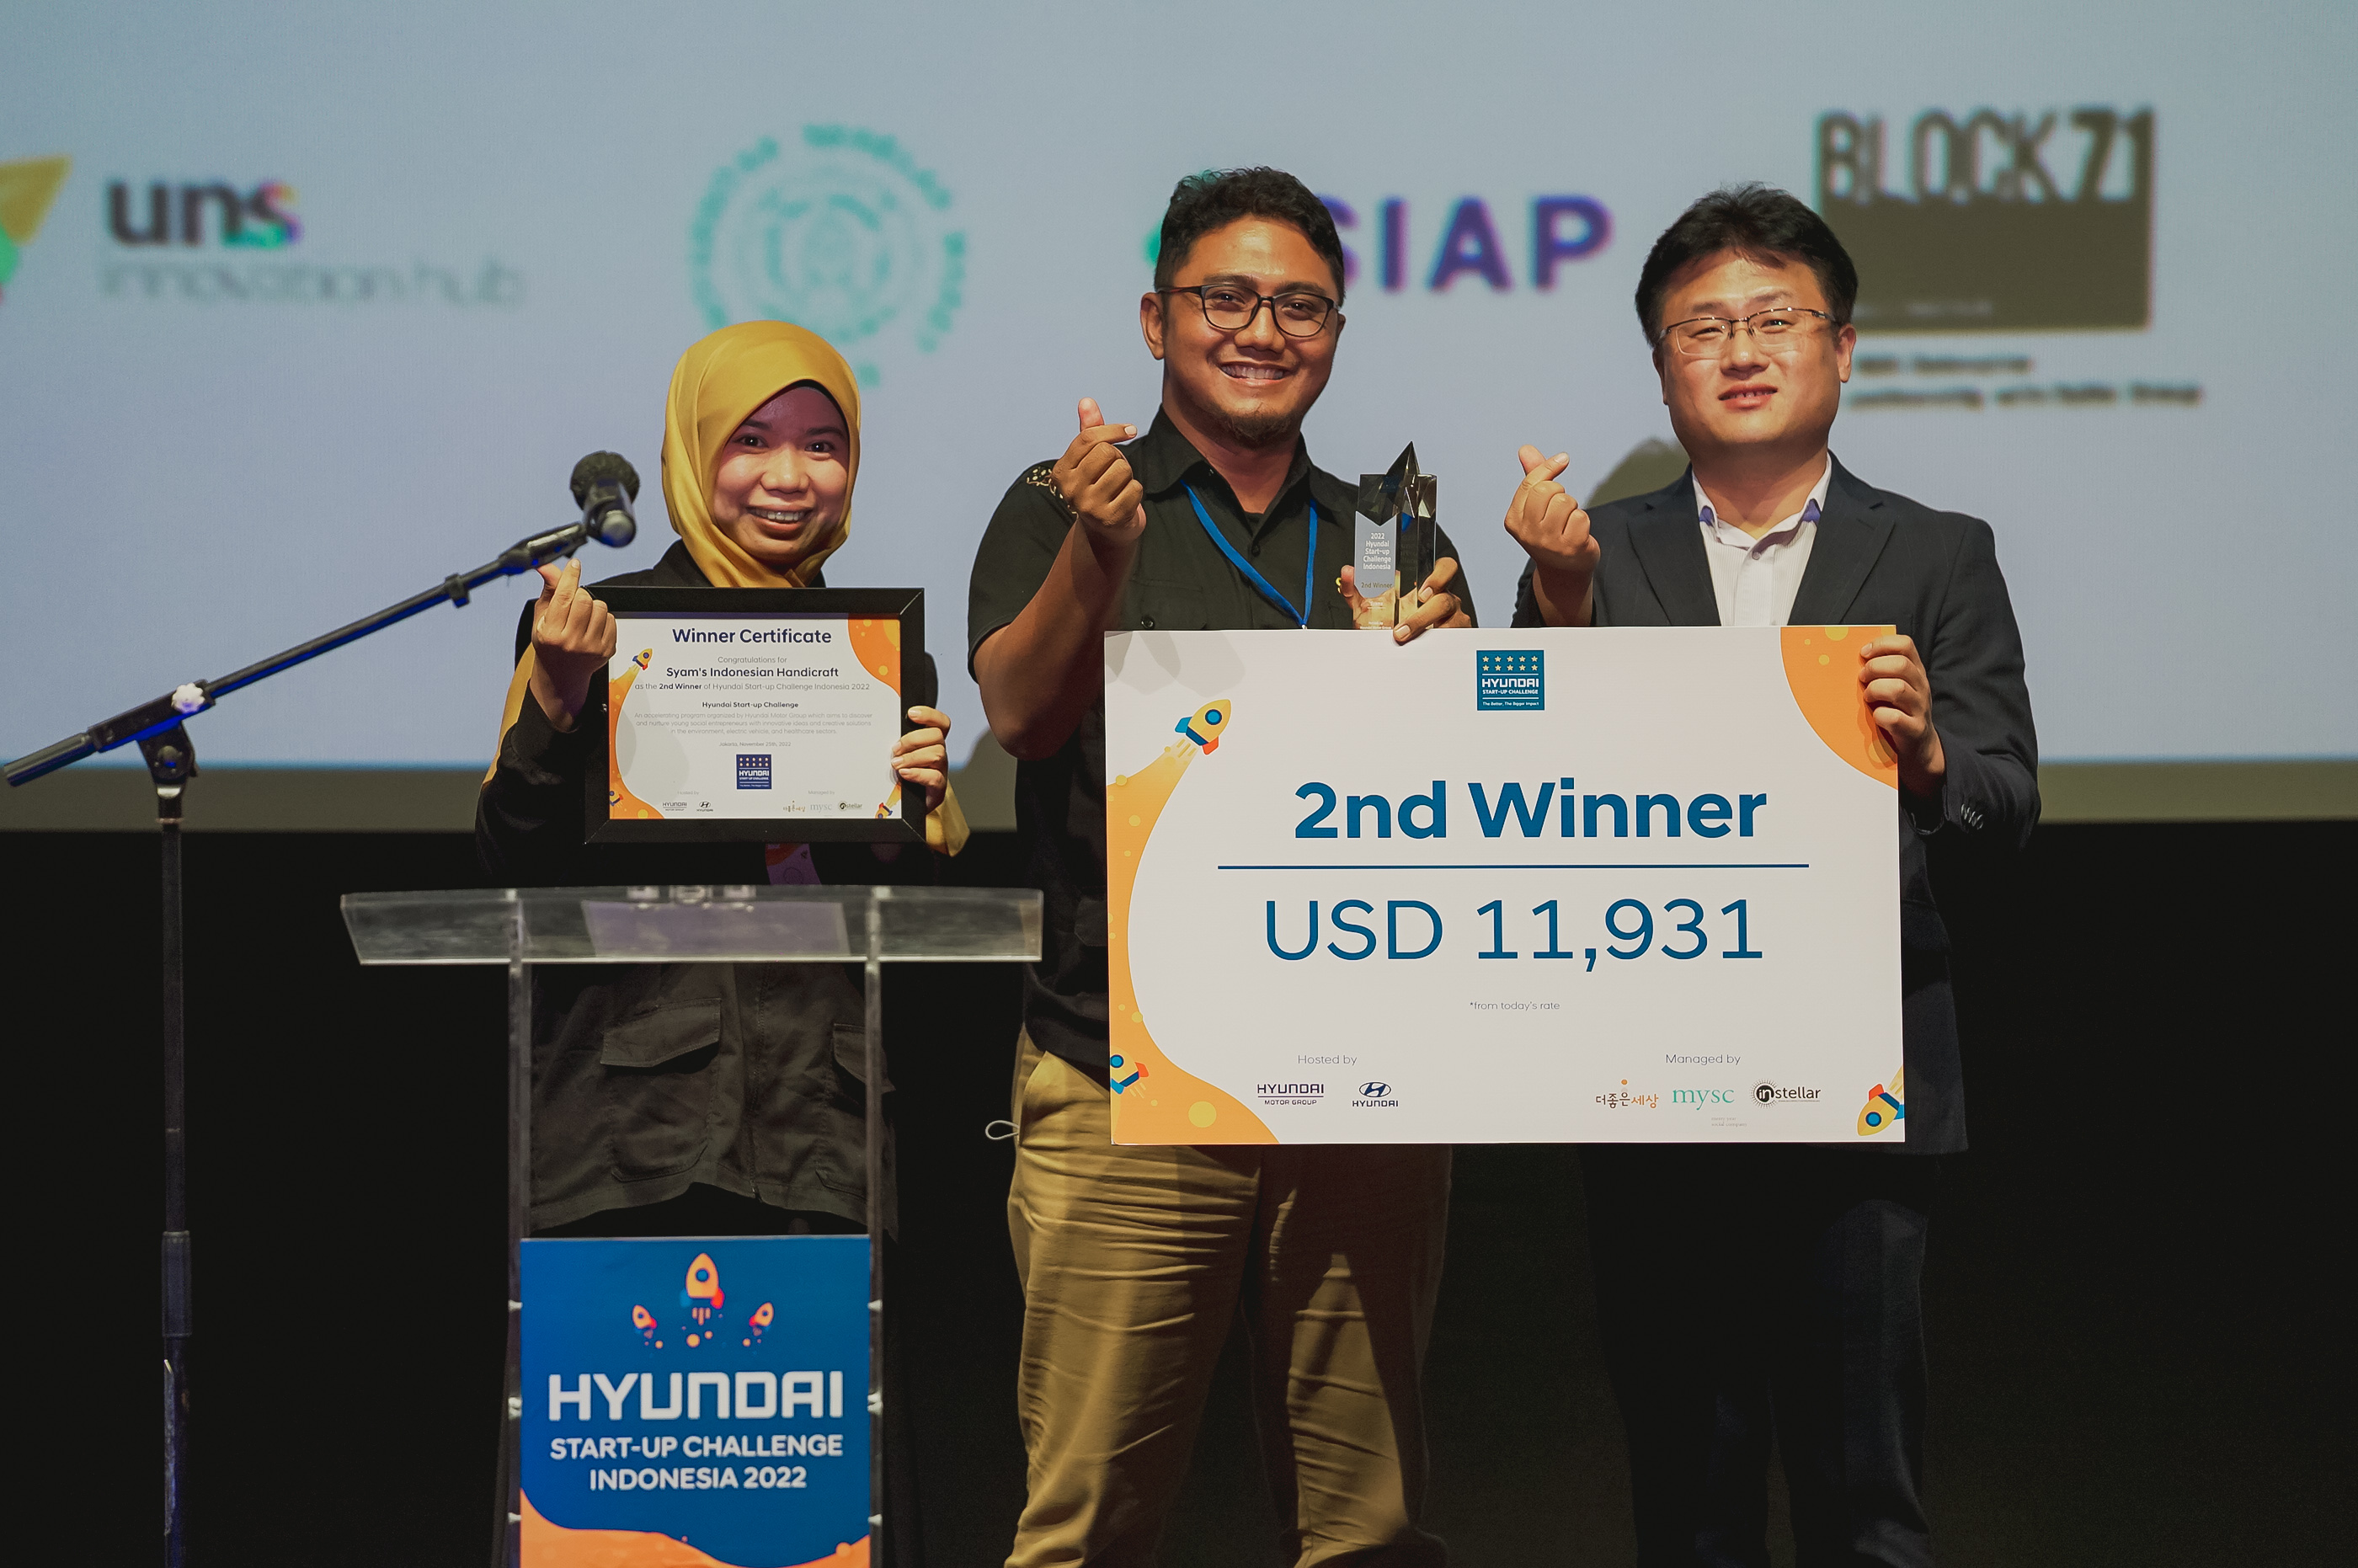 Instellar - Hyundai Startup Challenge 2022 Demo Day